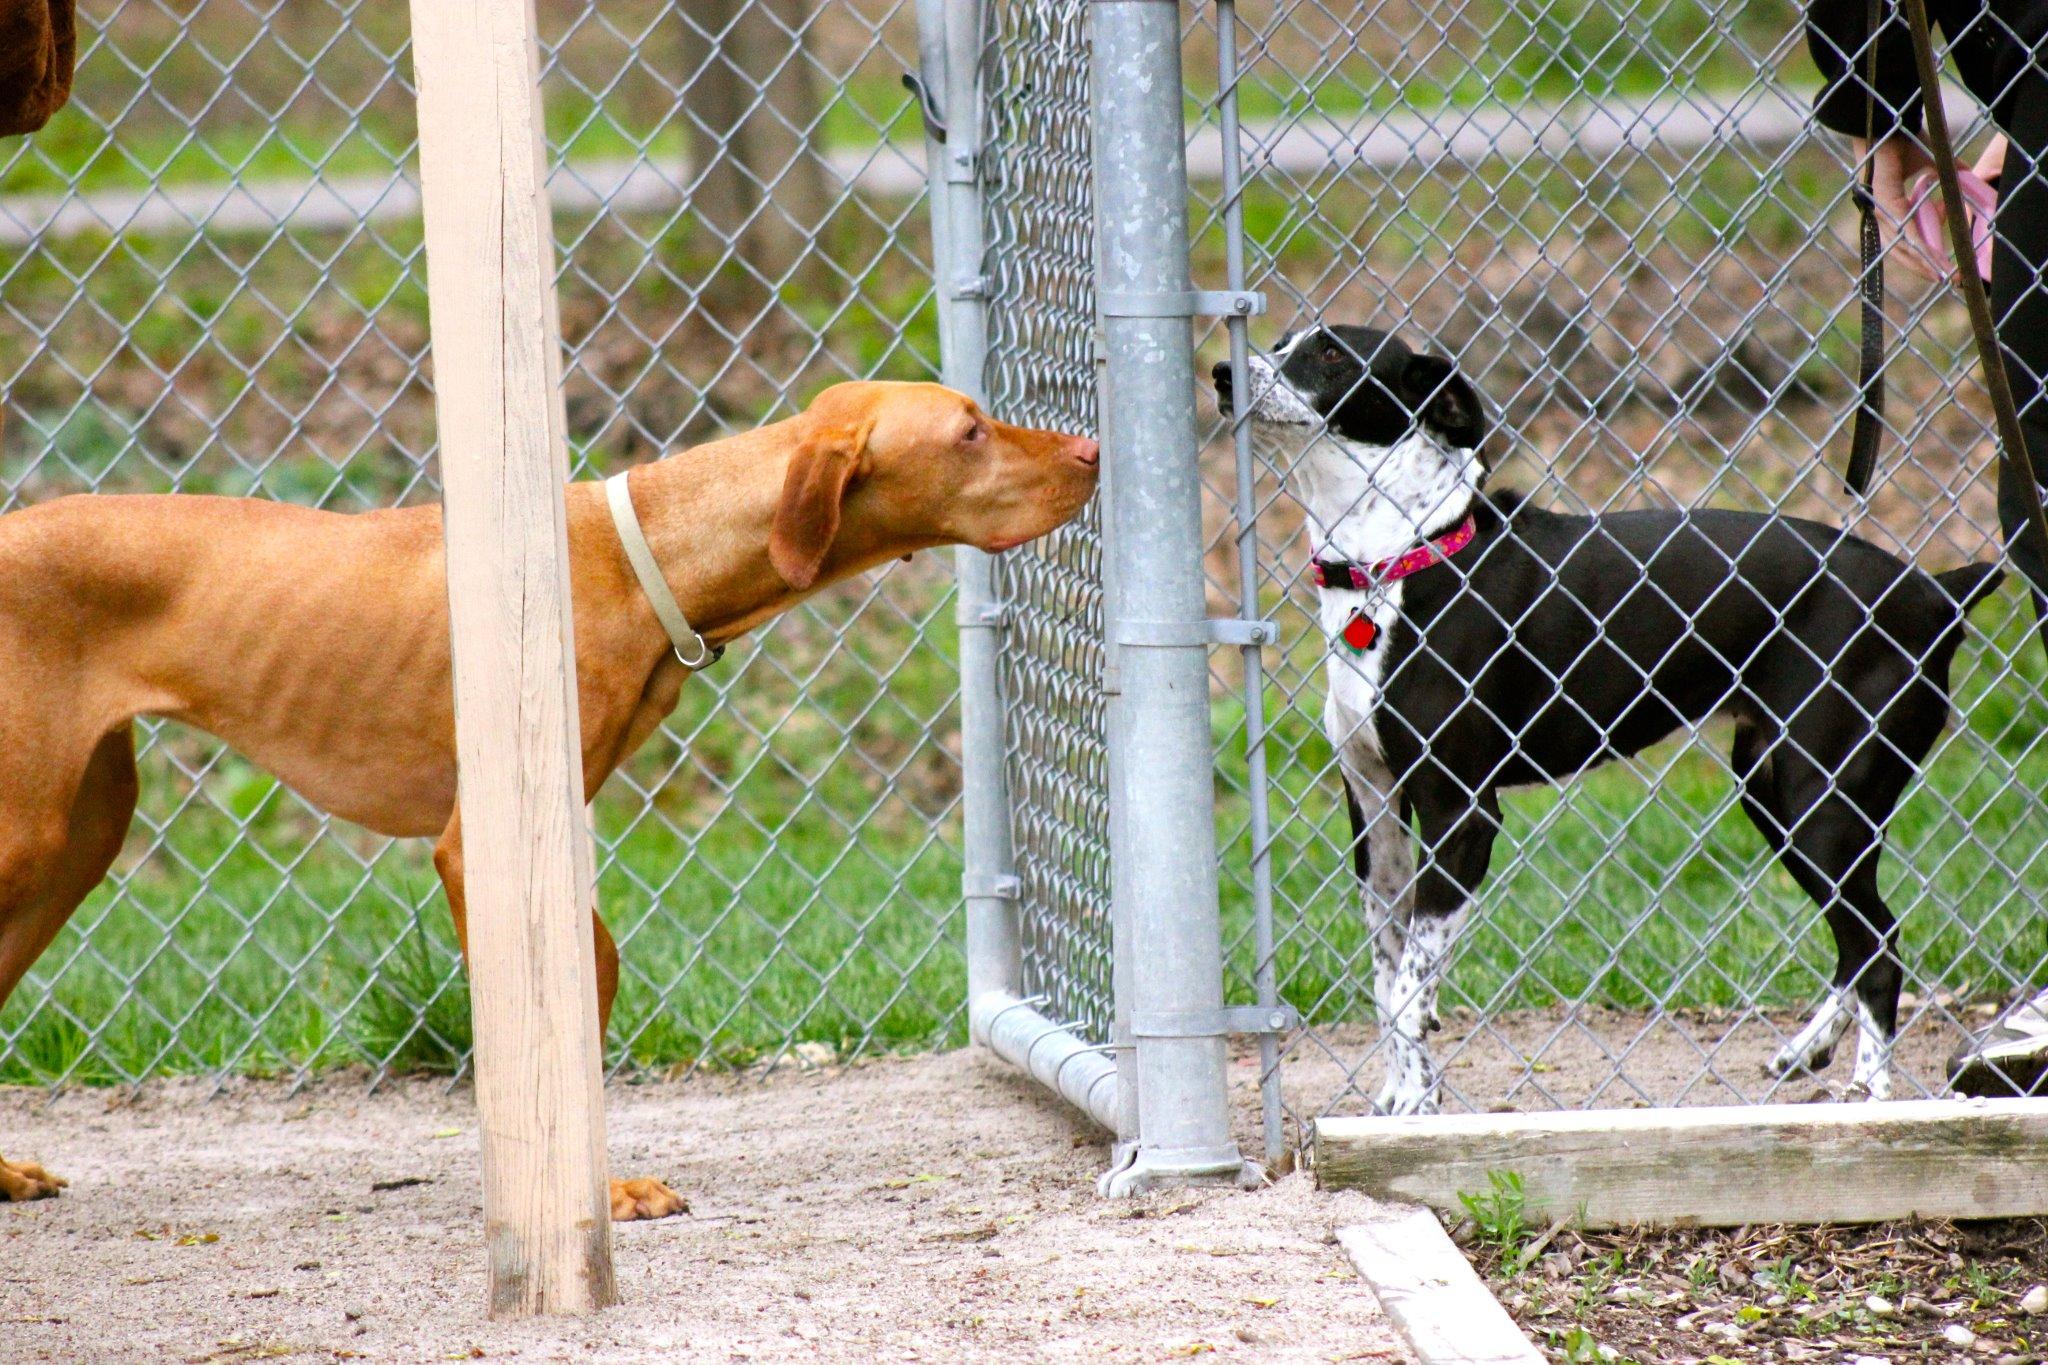 Pet Friendly Clinton Township Dog Park